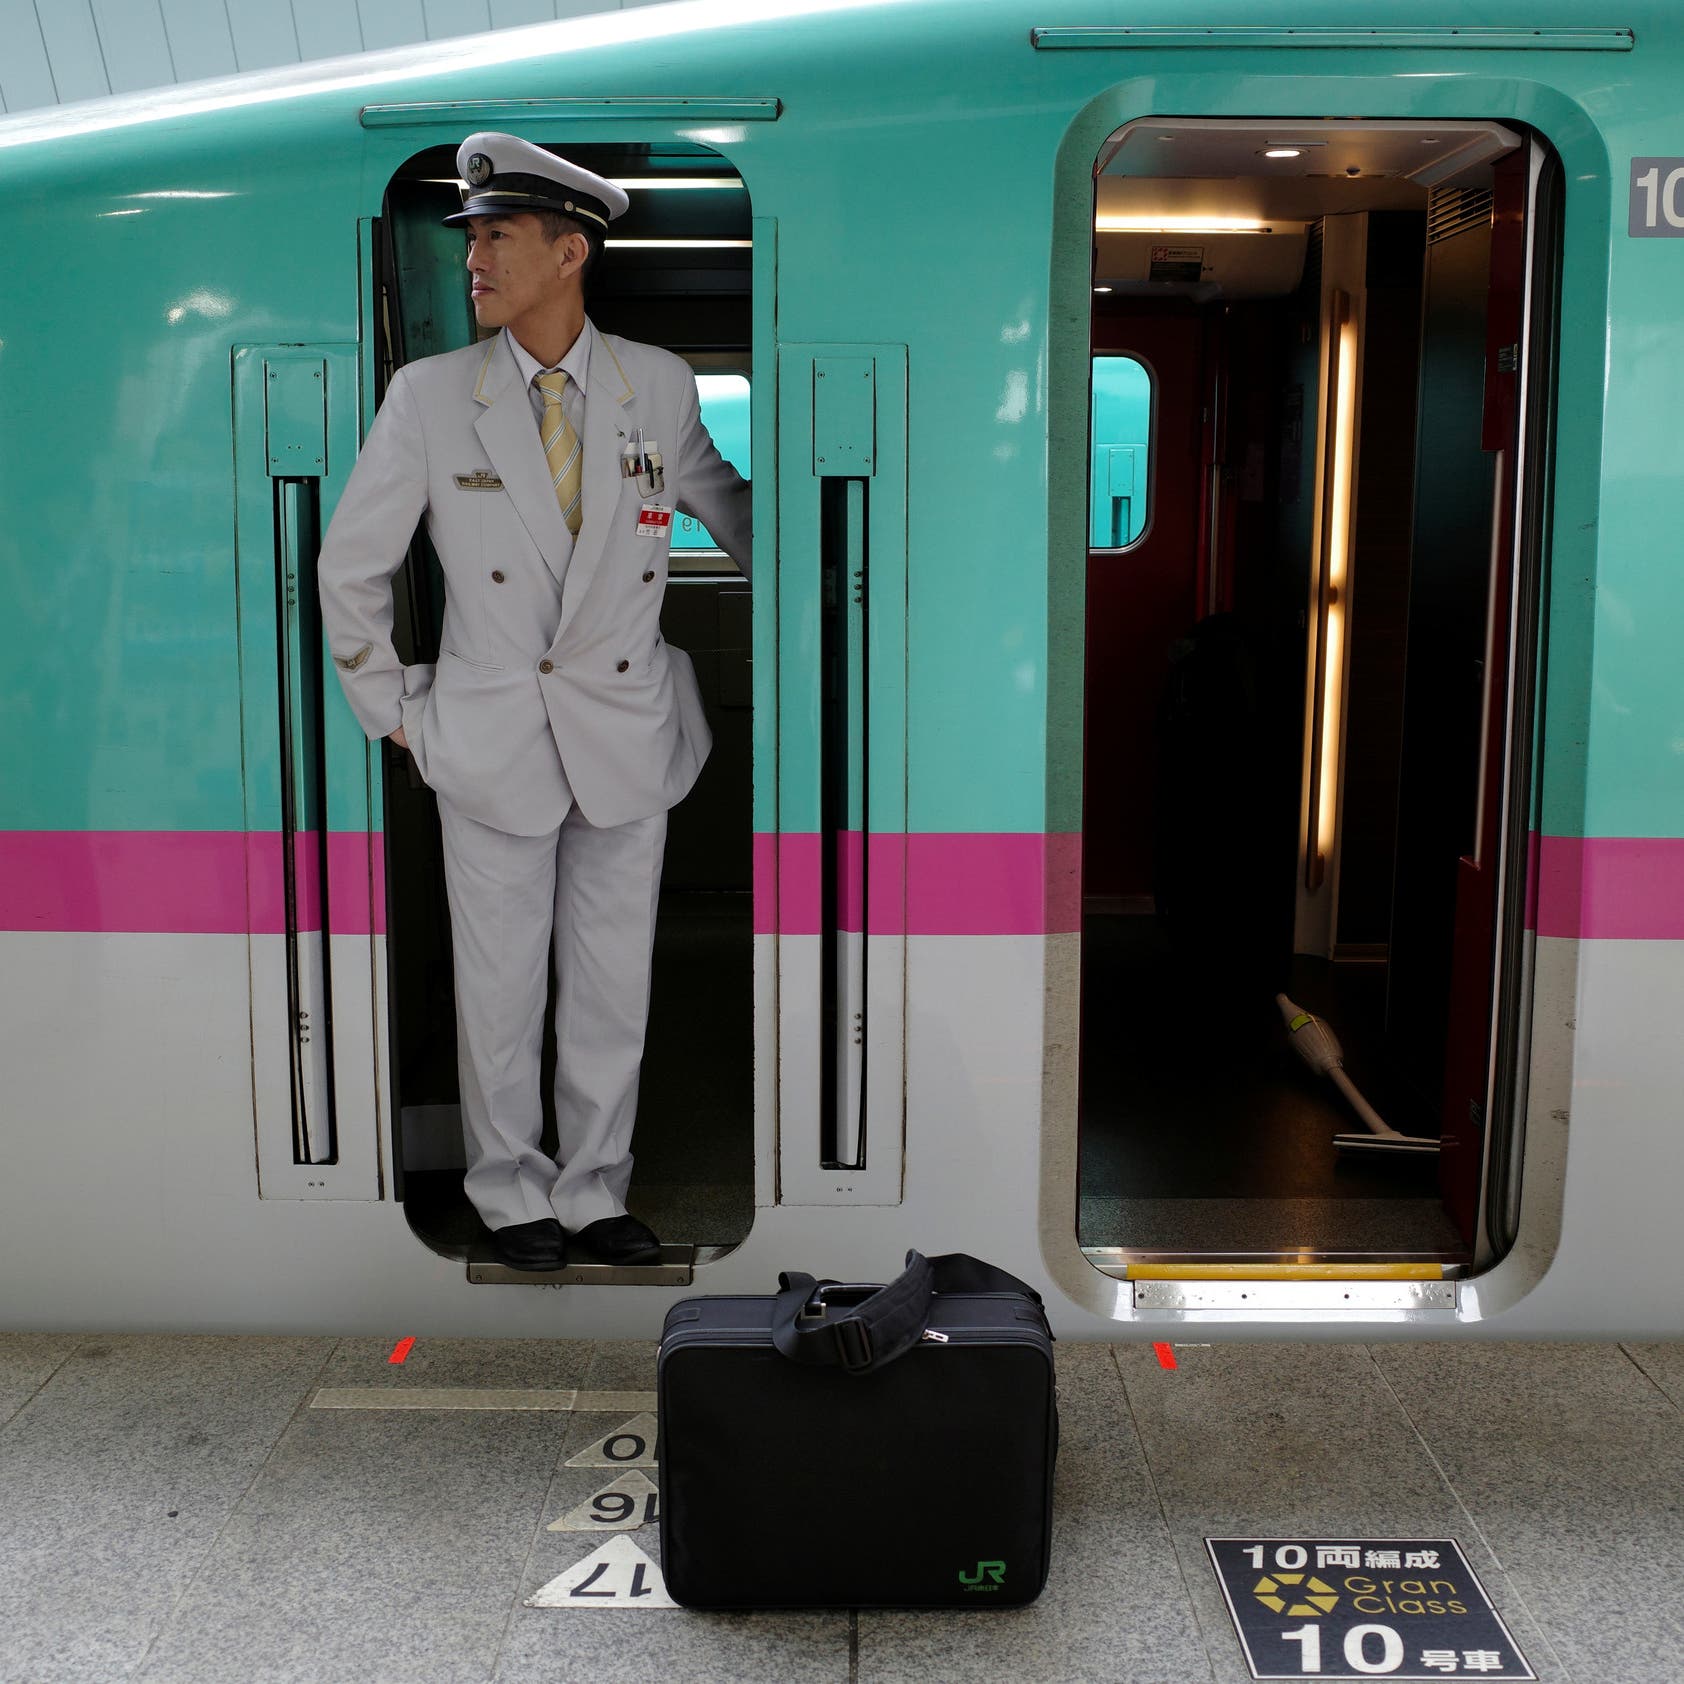 تأخر قطار ياباني لدقيقة بسبب دخول سائقه المرحاض يؤدي لتحقيق 